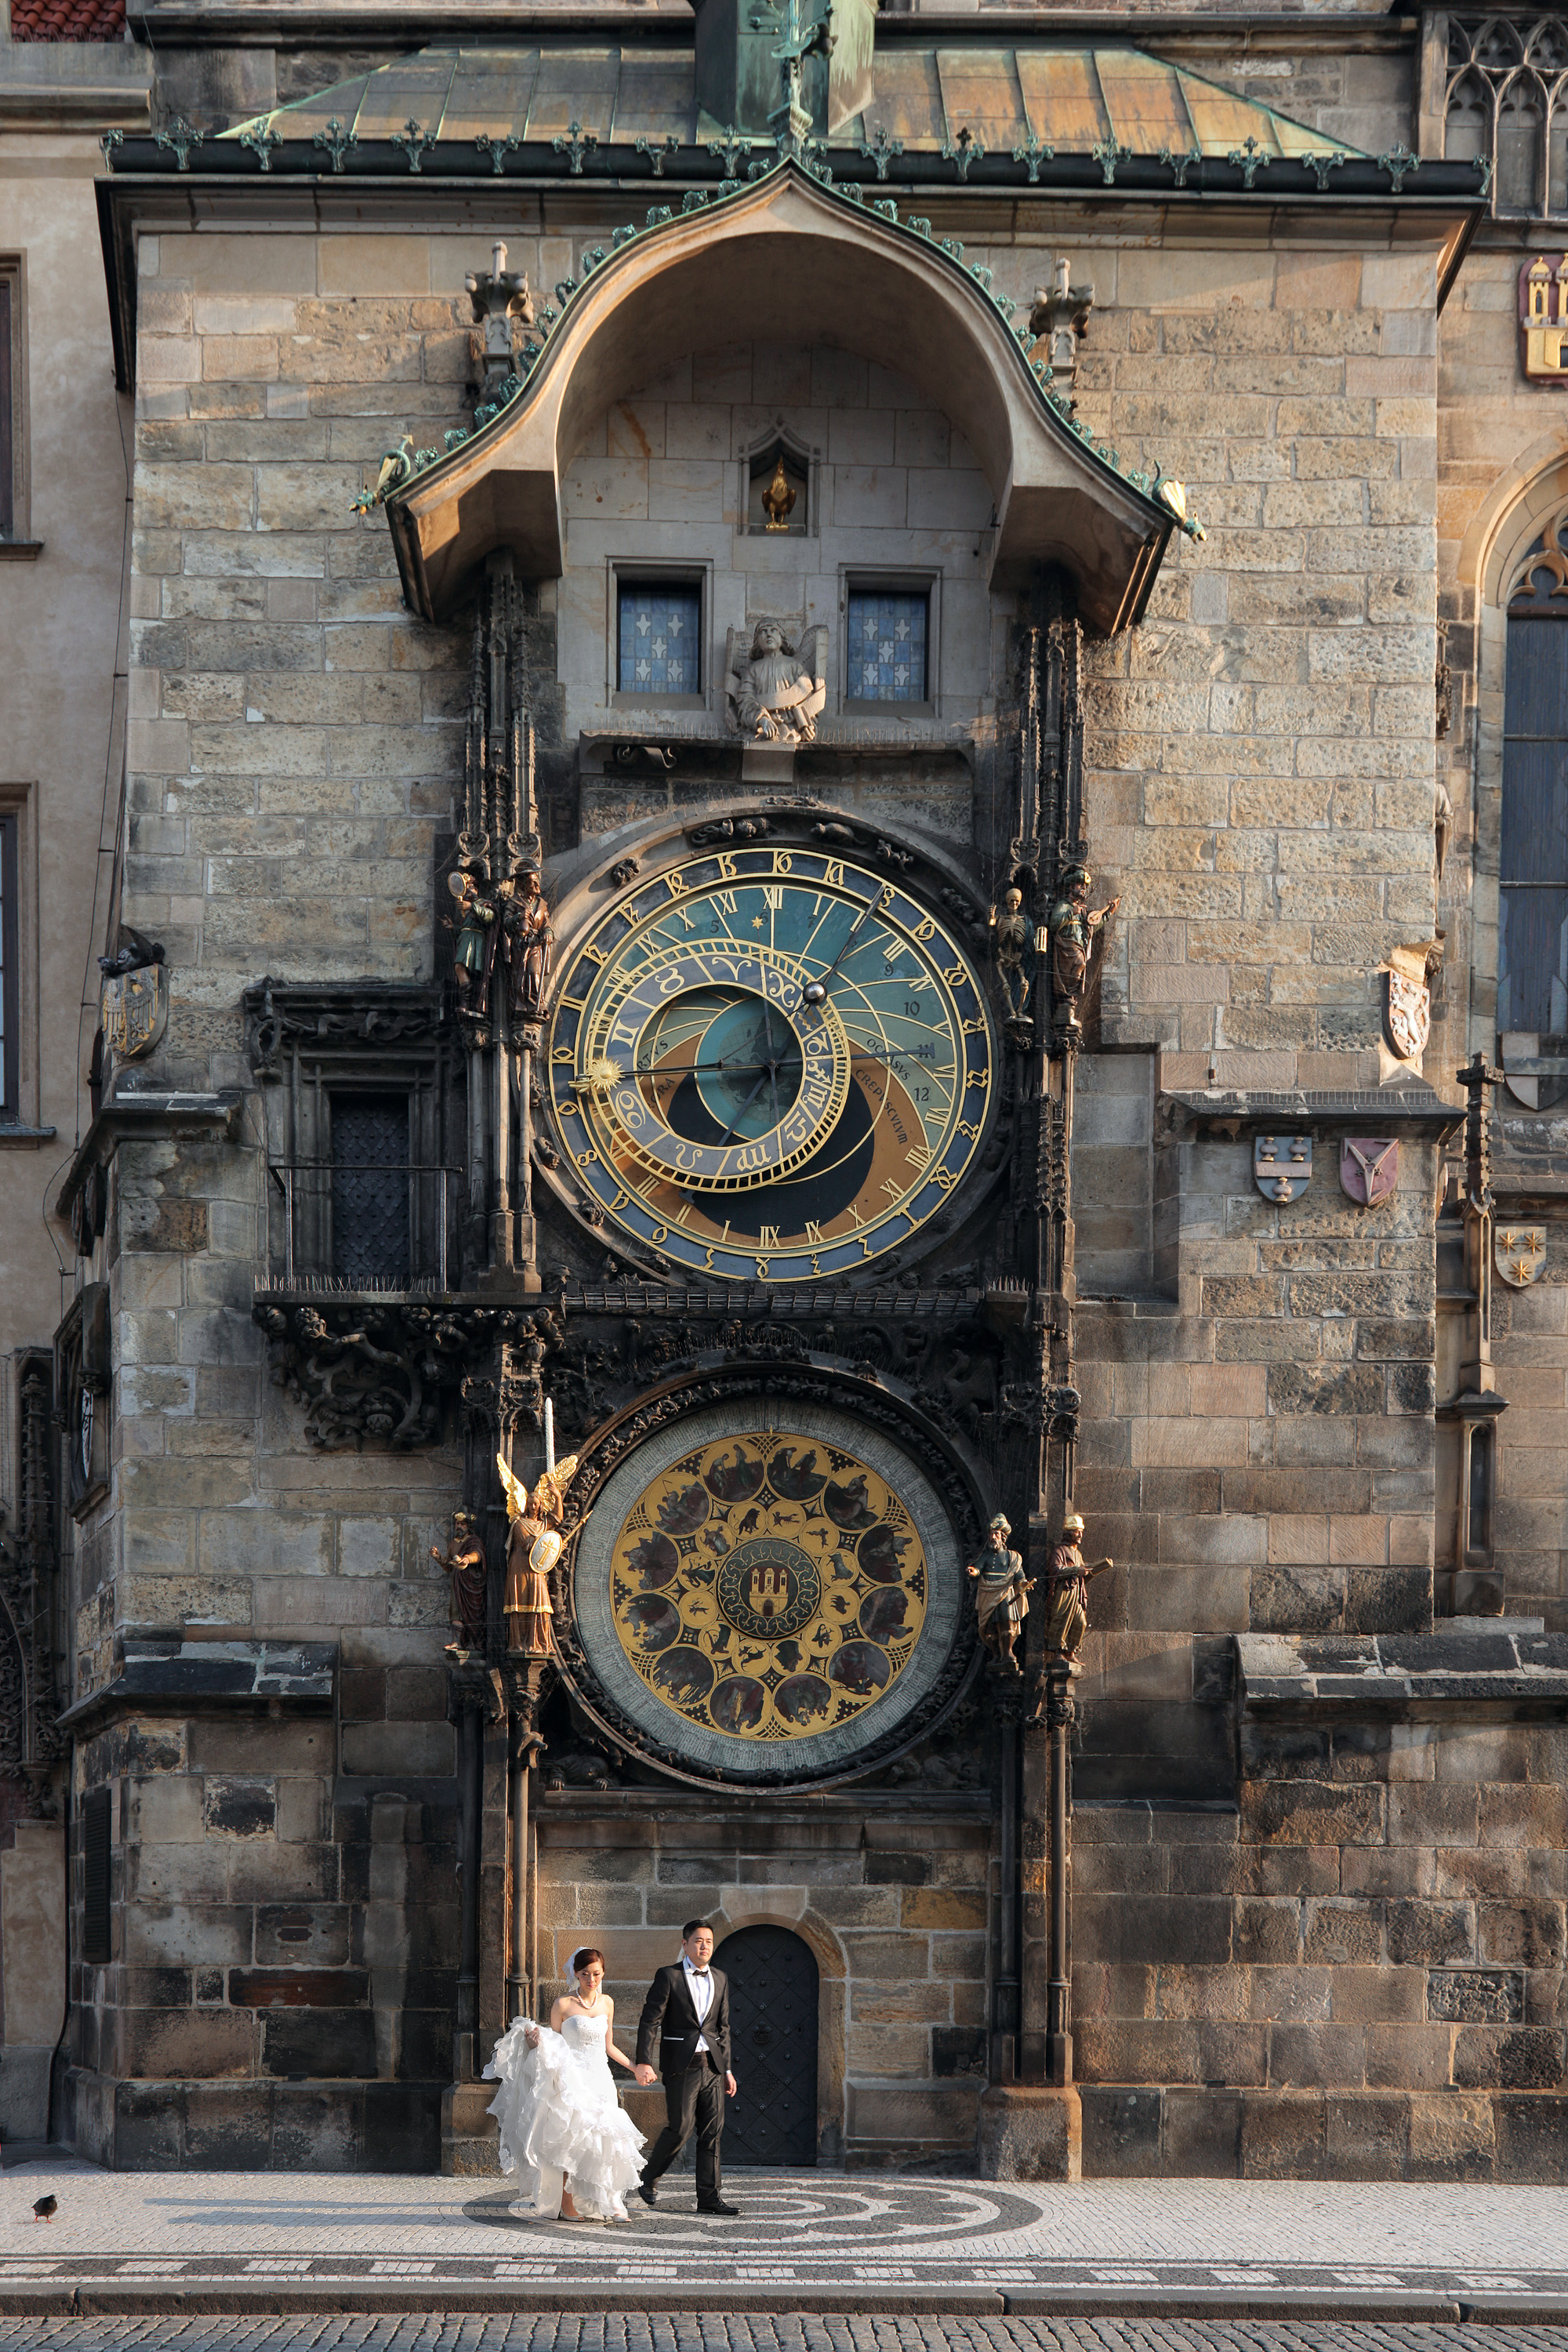 bill-hocker-astronomical-clock-prague-czech-republic-2013